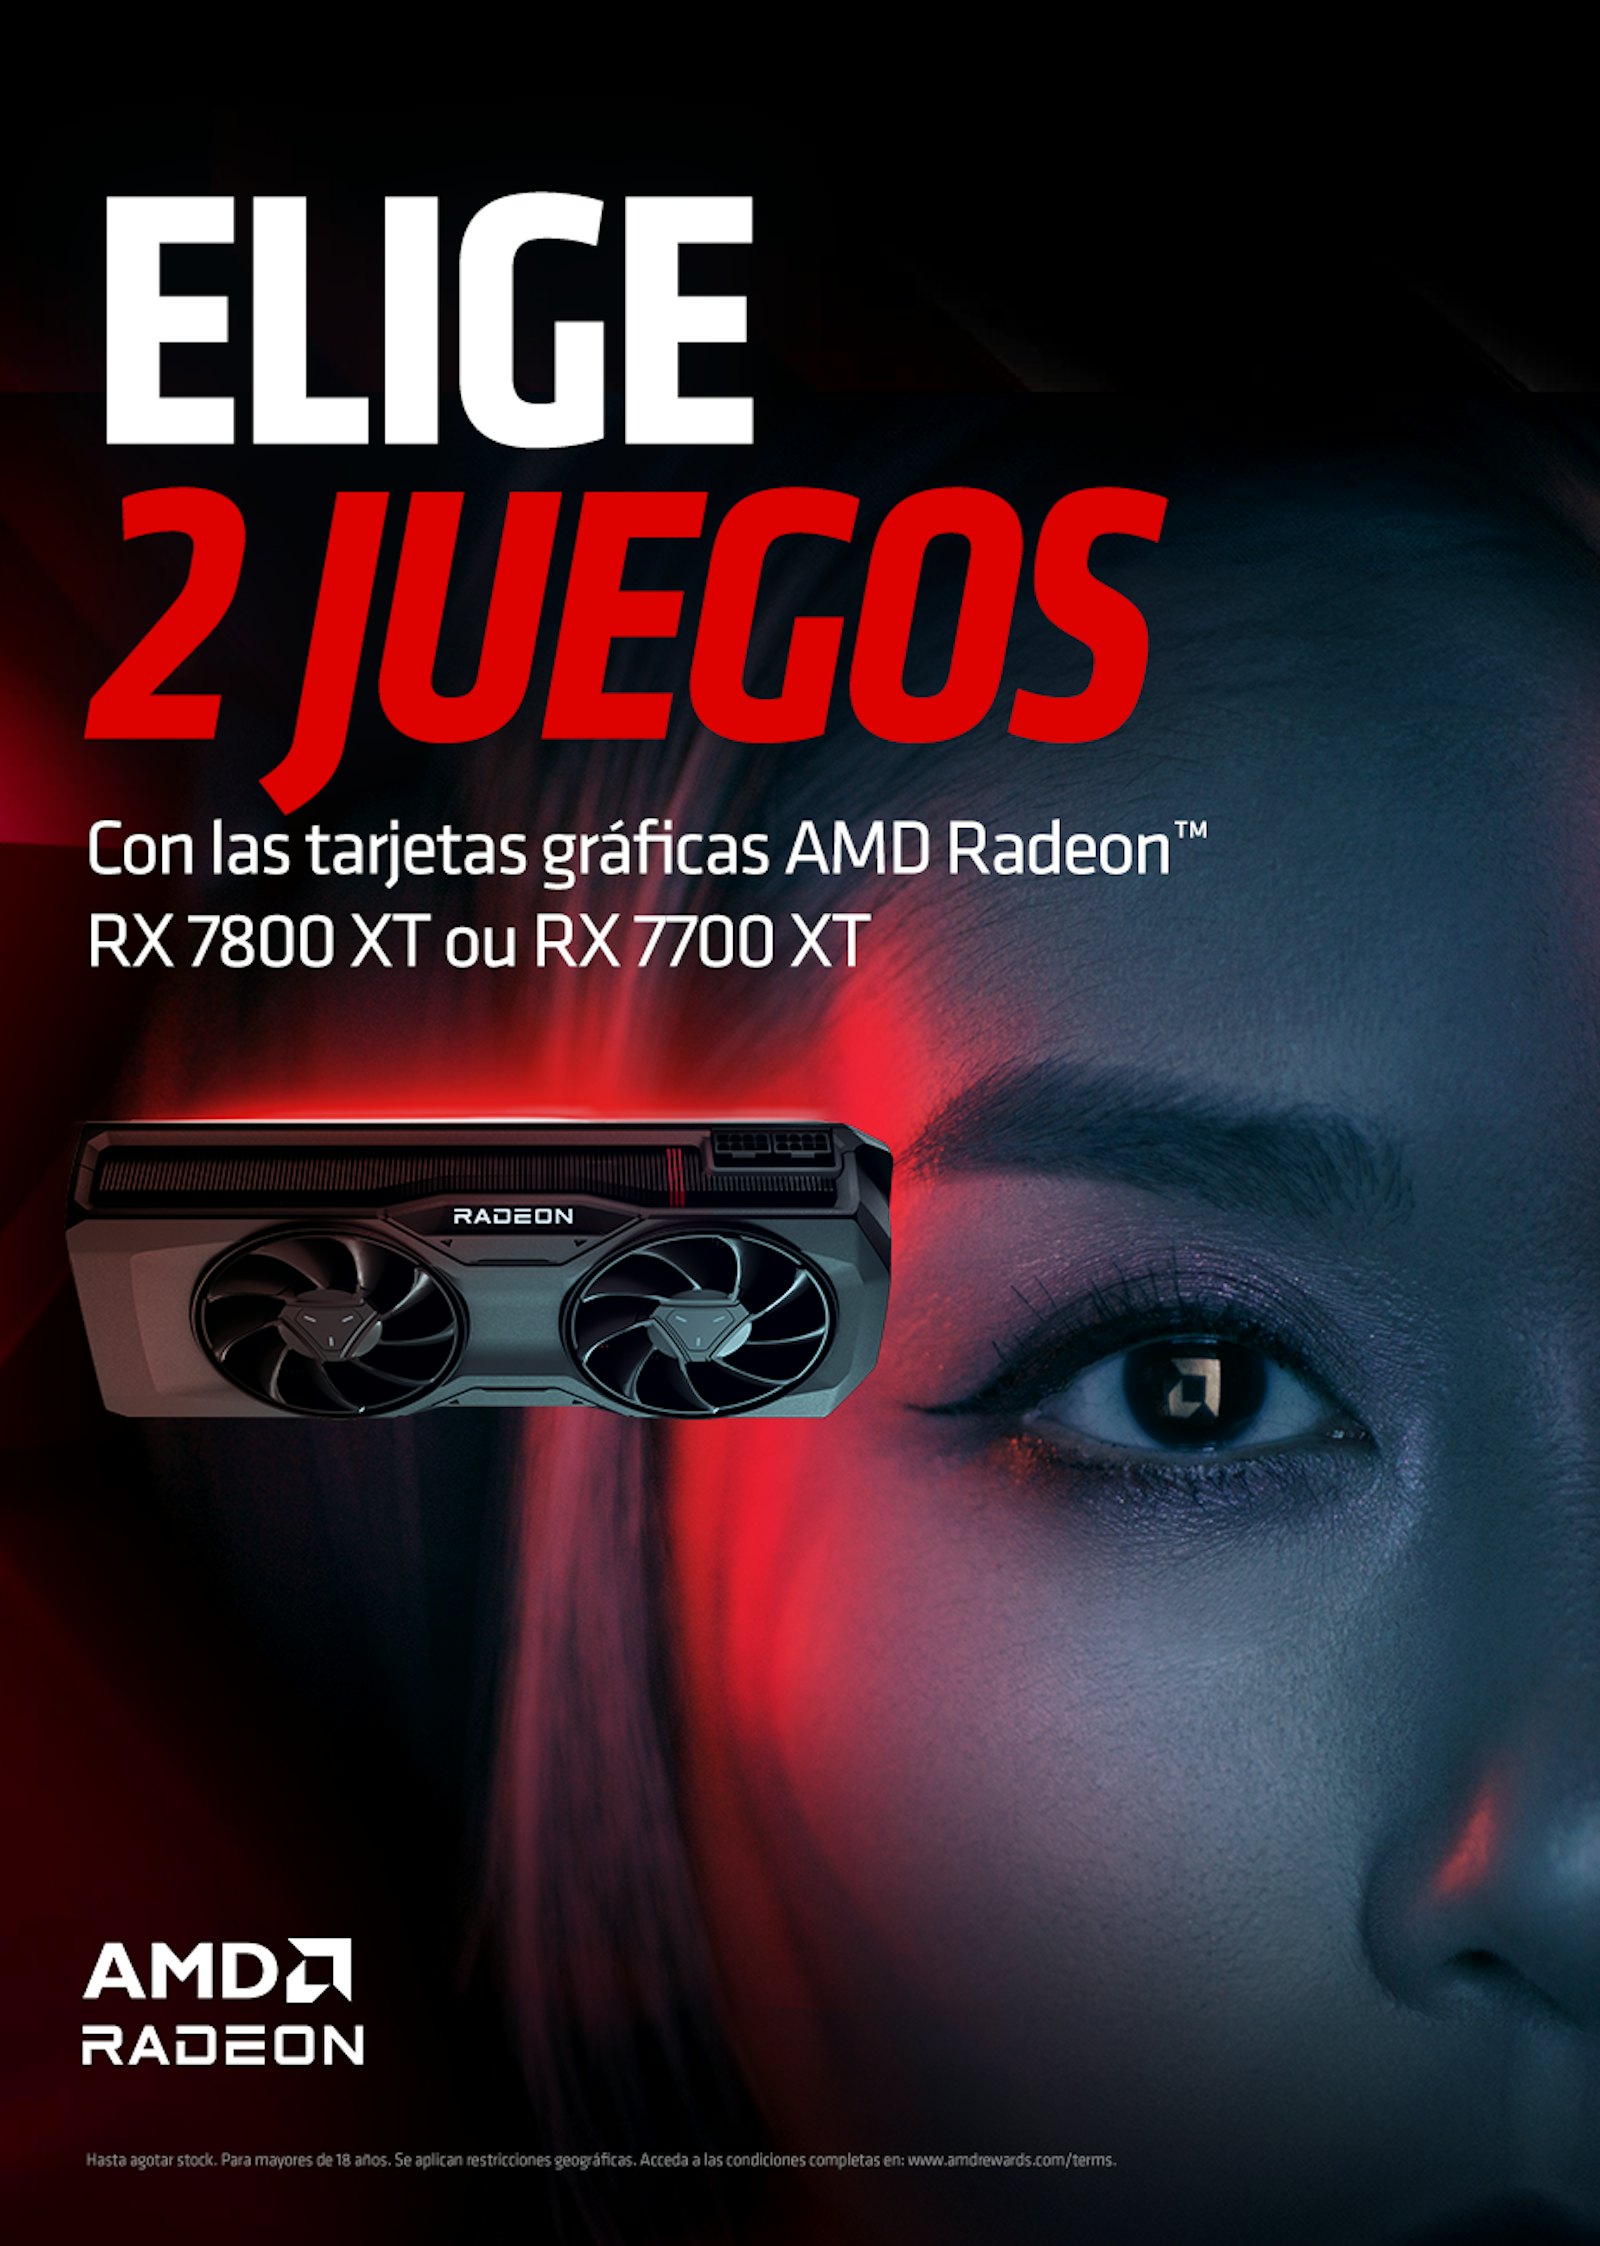 AMD Radeon Bundle